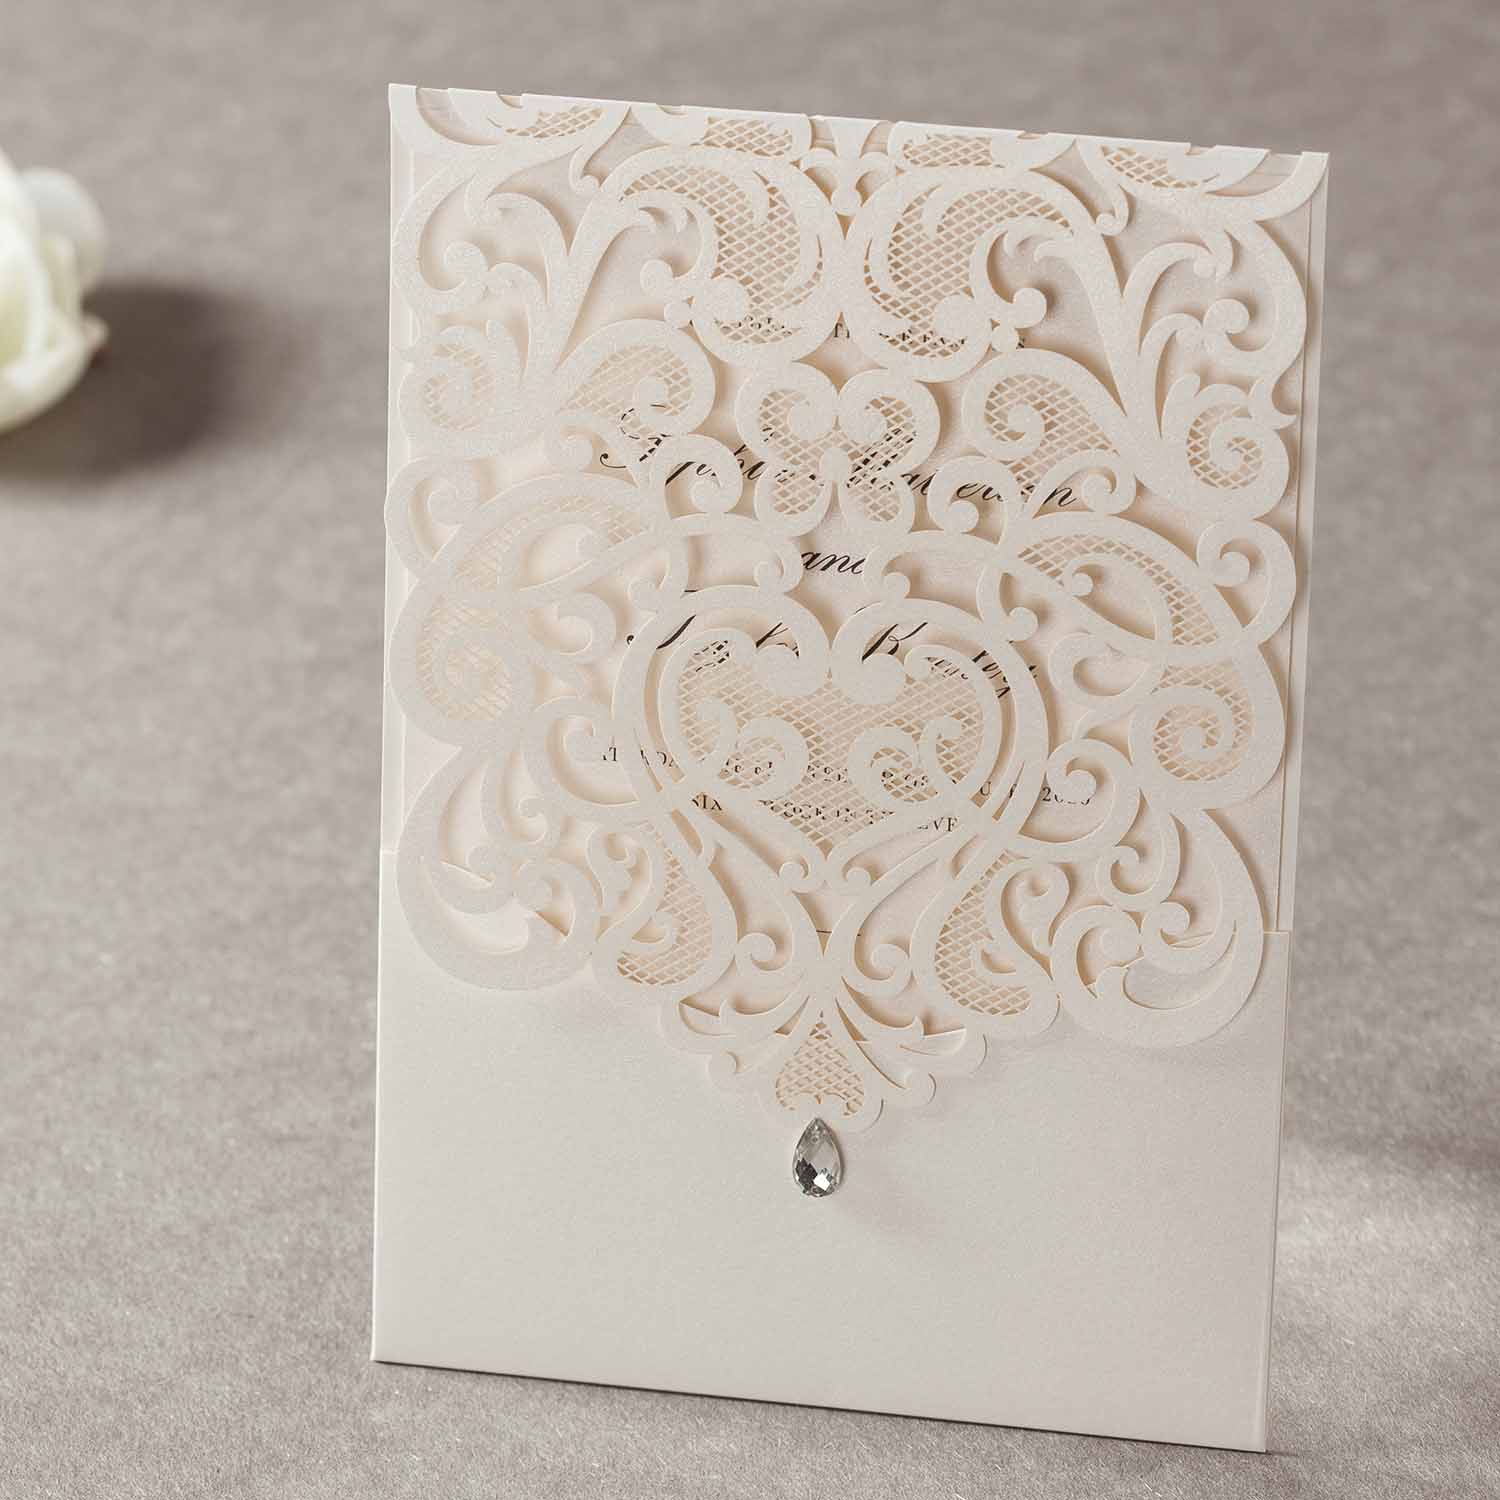 Laser cut wedding invitations - CW5001